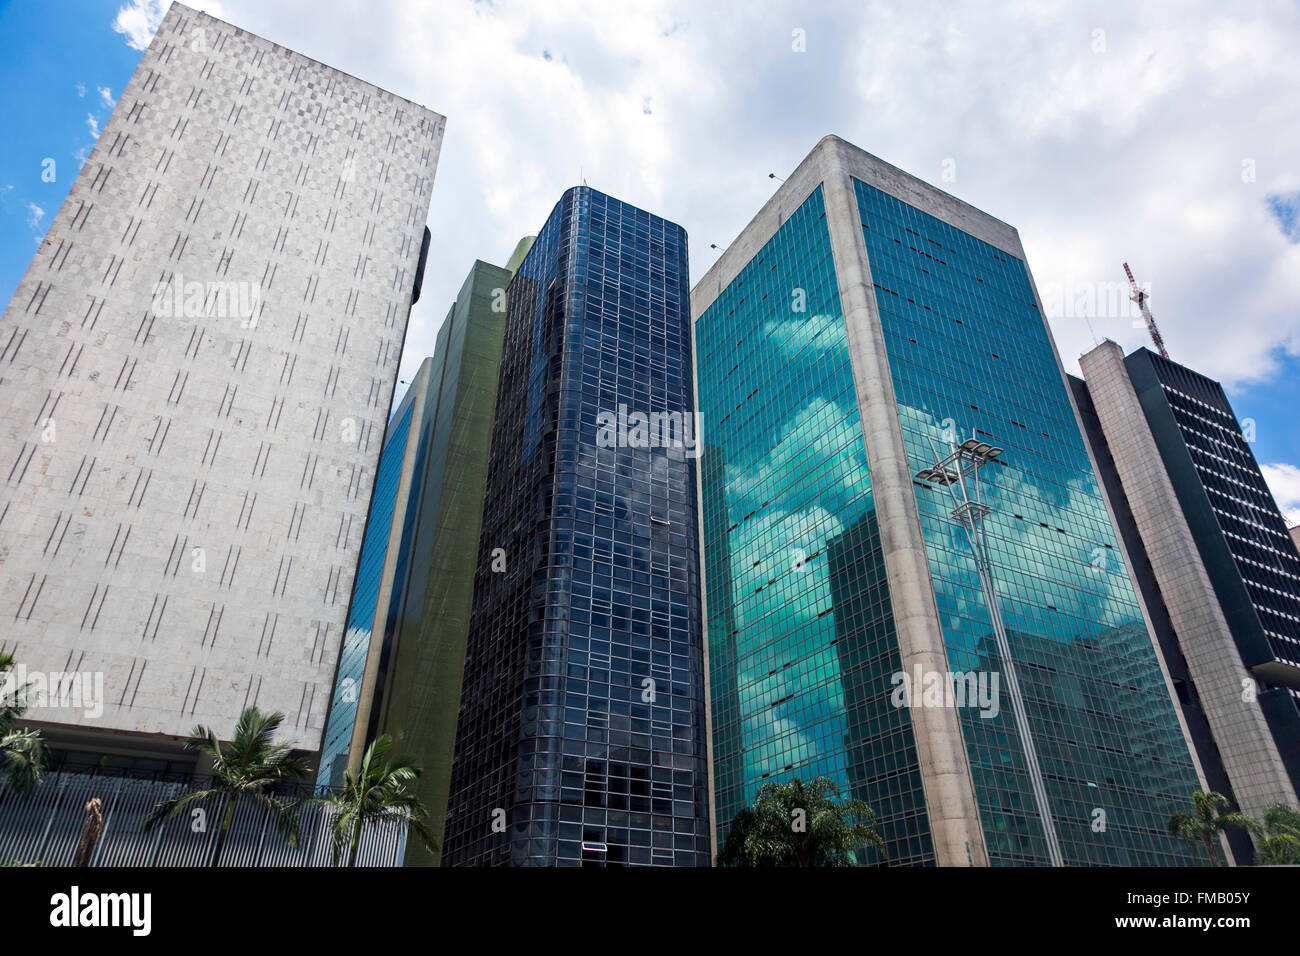 Les gratte-ciel modernes sur l'Avenue Paulista, Sao Paulo, Brésil (troisième bâtiment - Cetenco Plaza) Banque D'Images